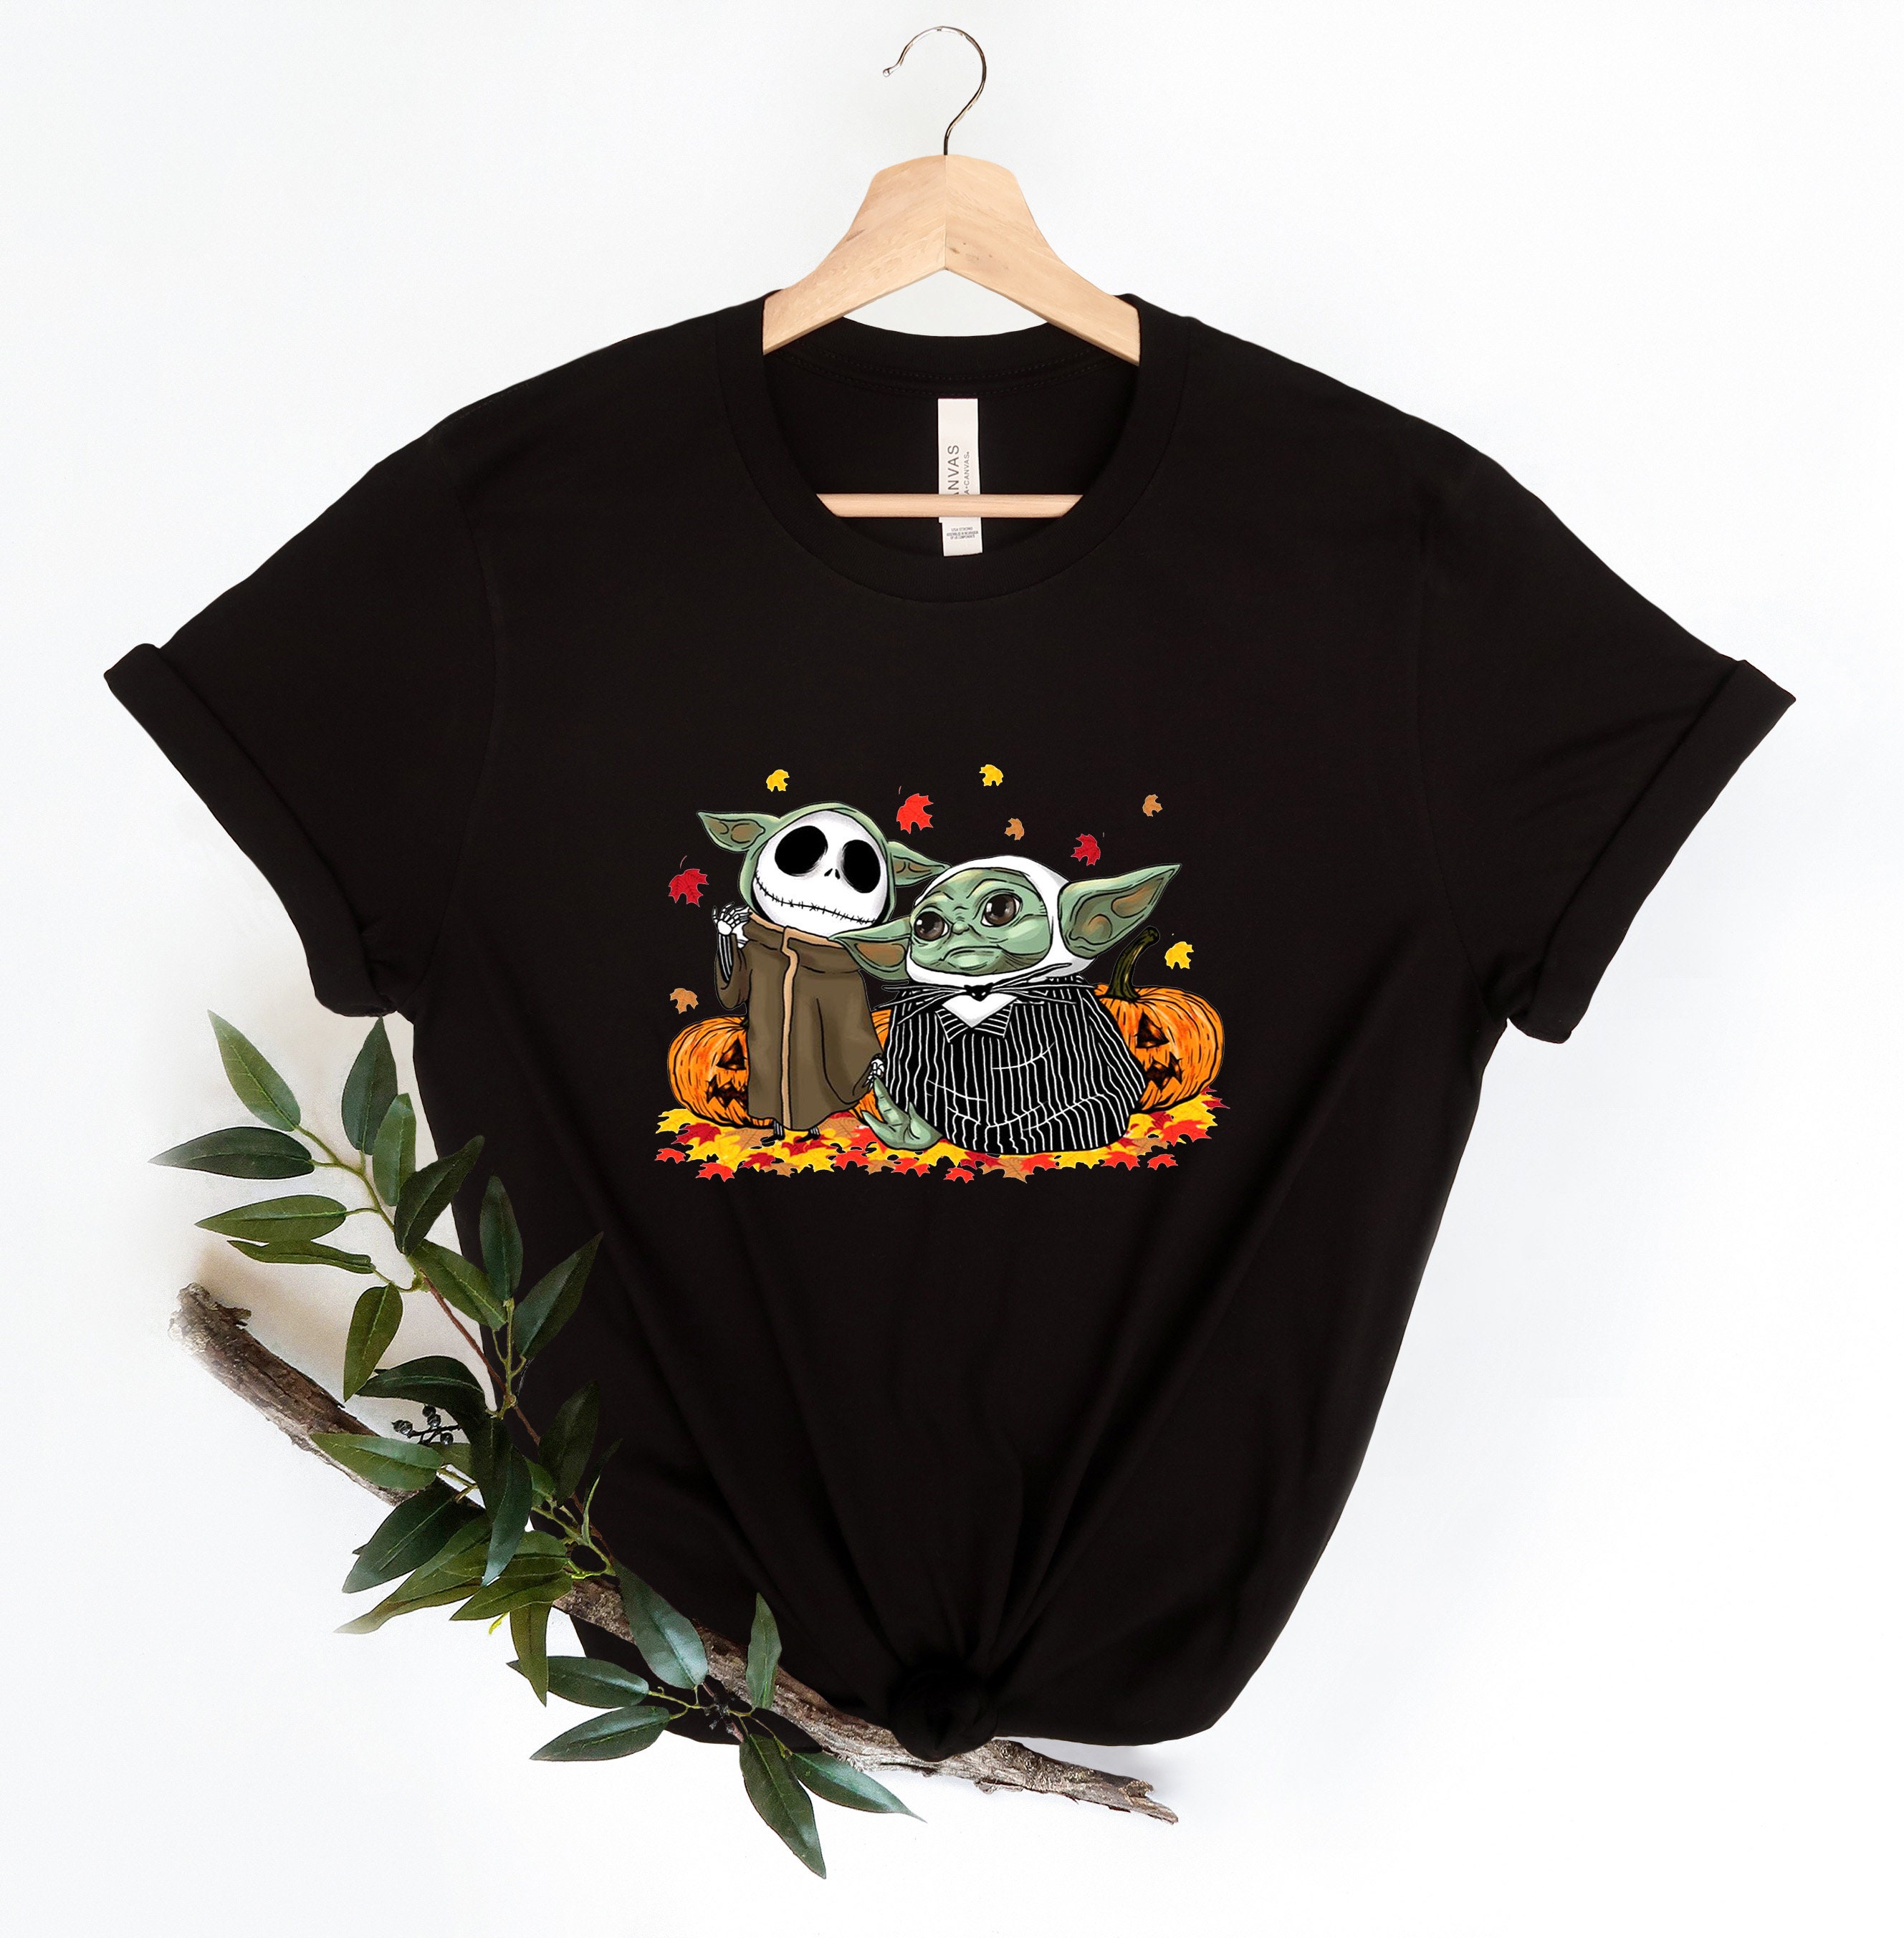 Discover Camiseta Alien Baby Yoda Boo Halloween Lindo Divertido para Hombre Mujer